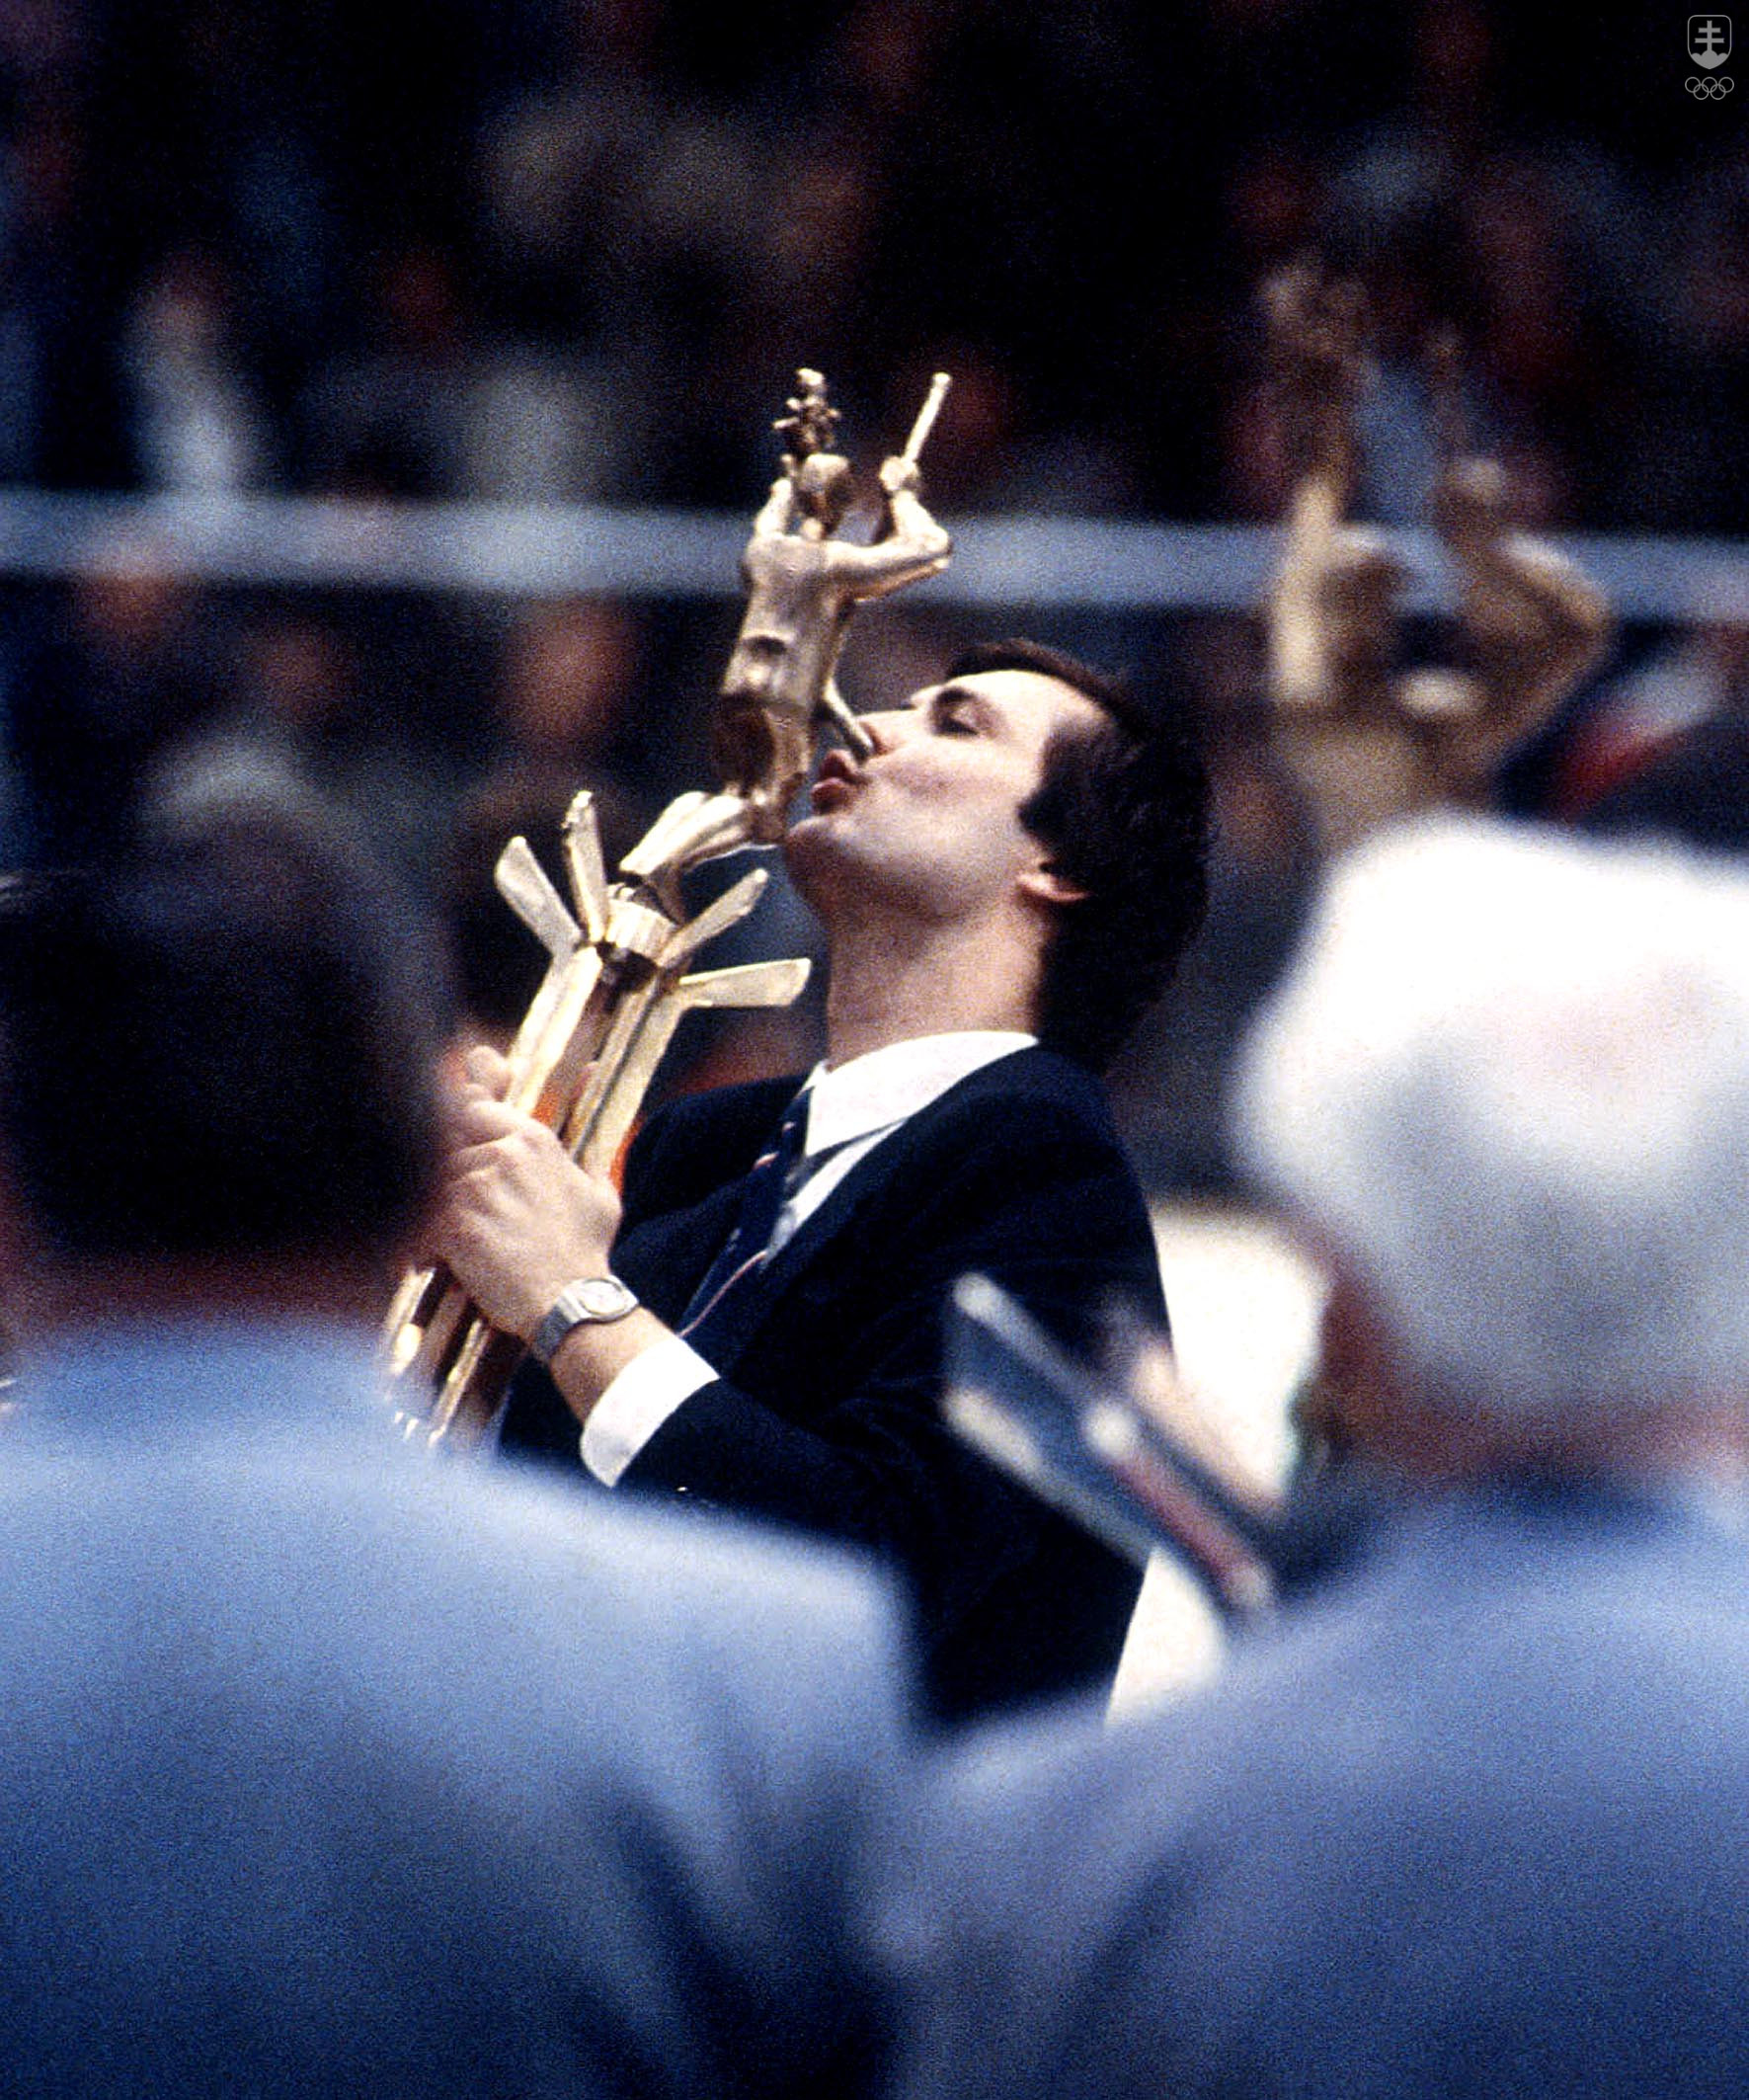 Dárius Rusnák s pohárom pre víťaza majstrovstiev sveta v hokeji 1985